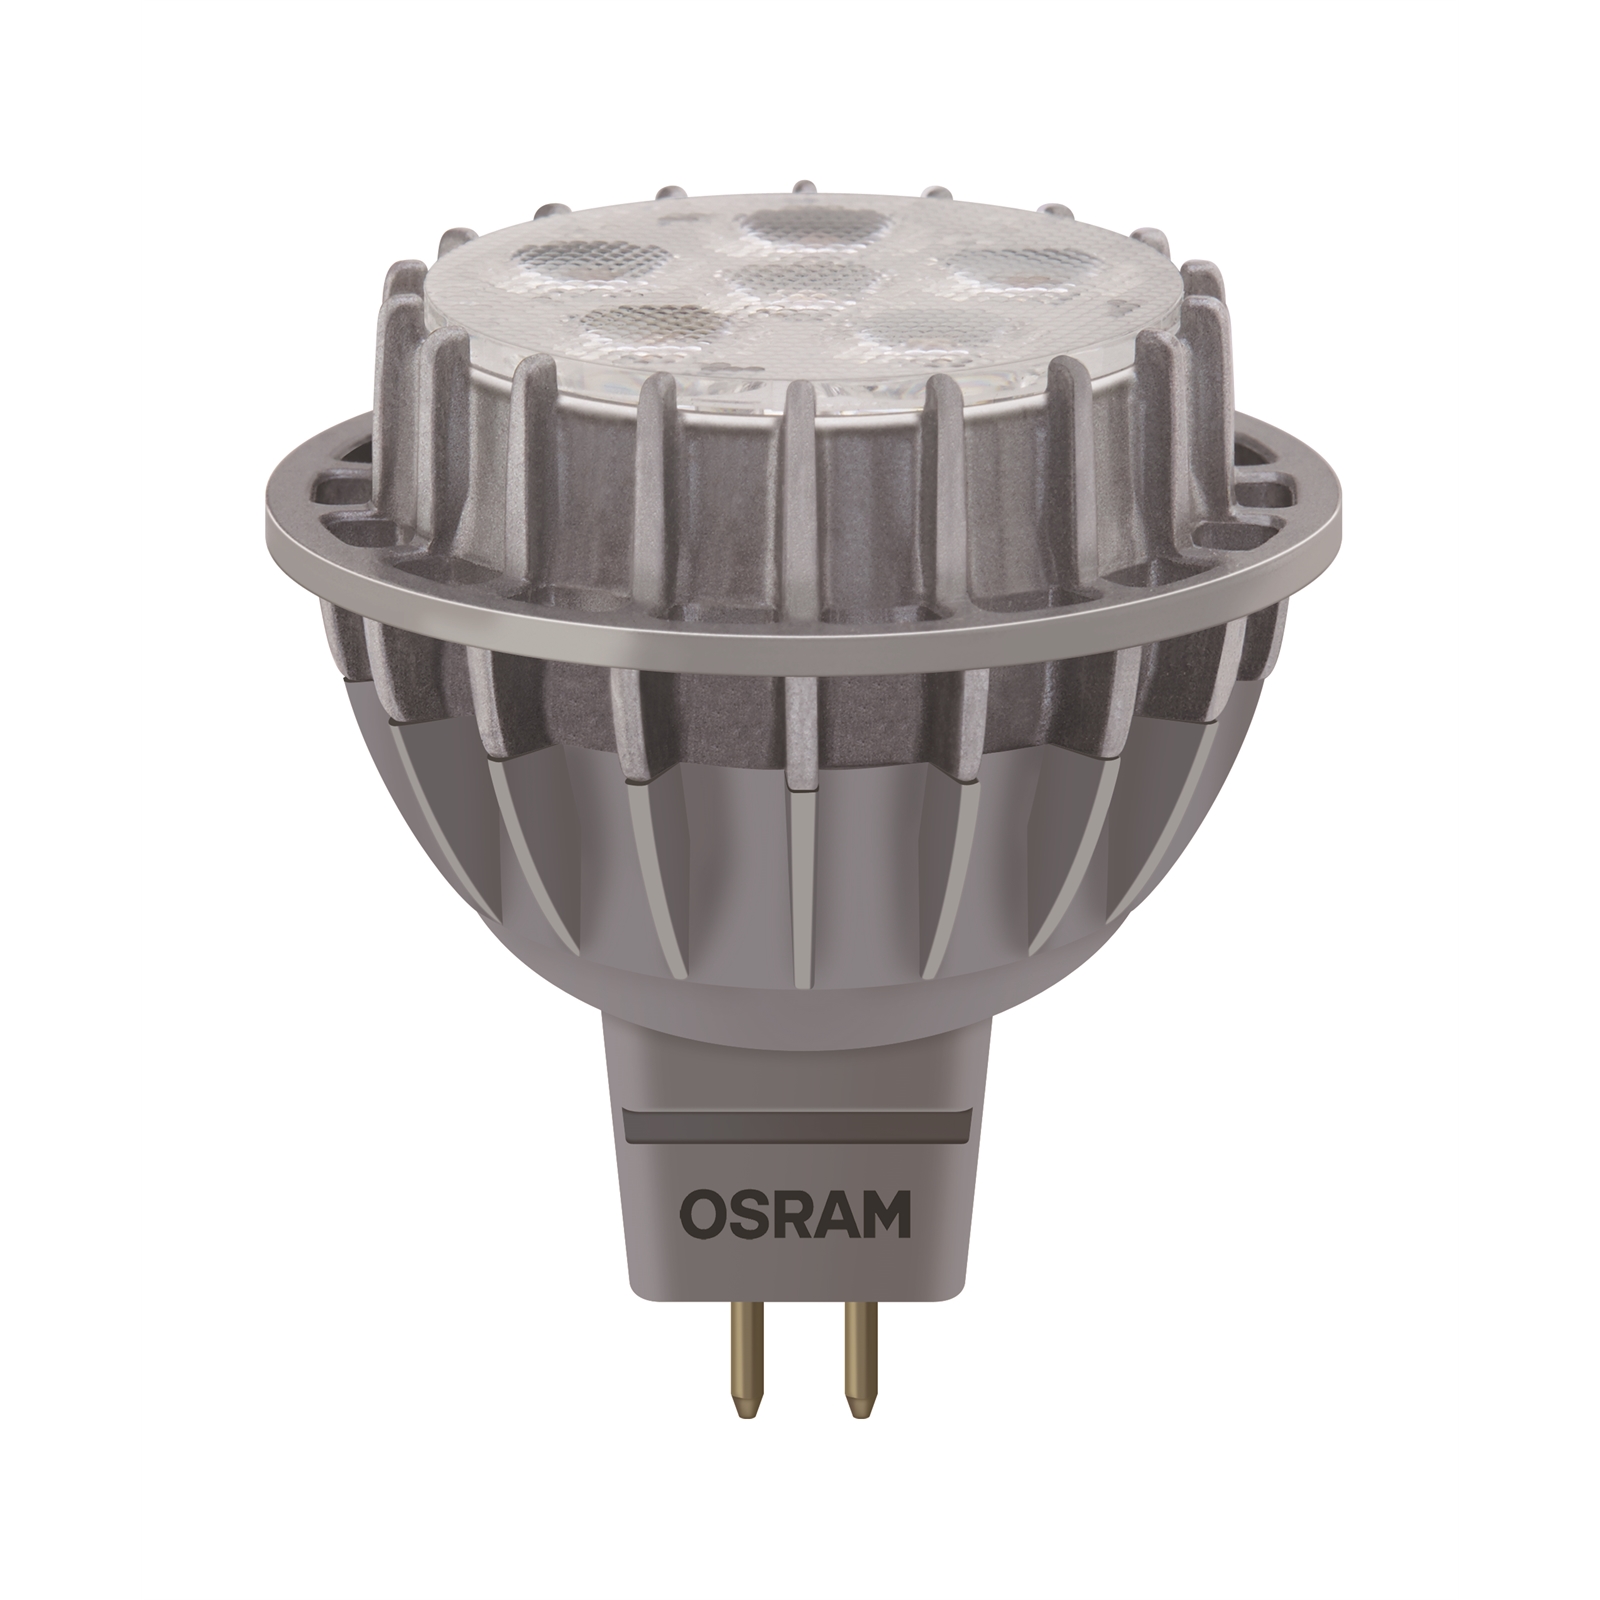 Osram LED MR16 12V Dimmable Warm White Globe